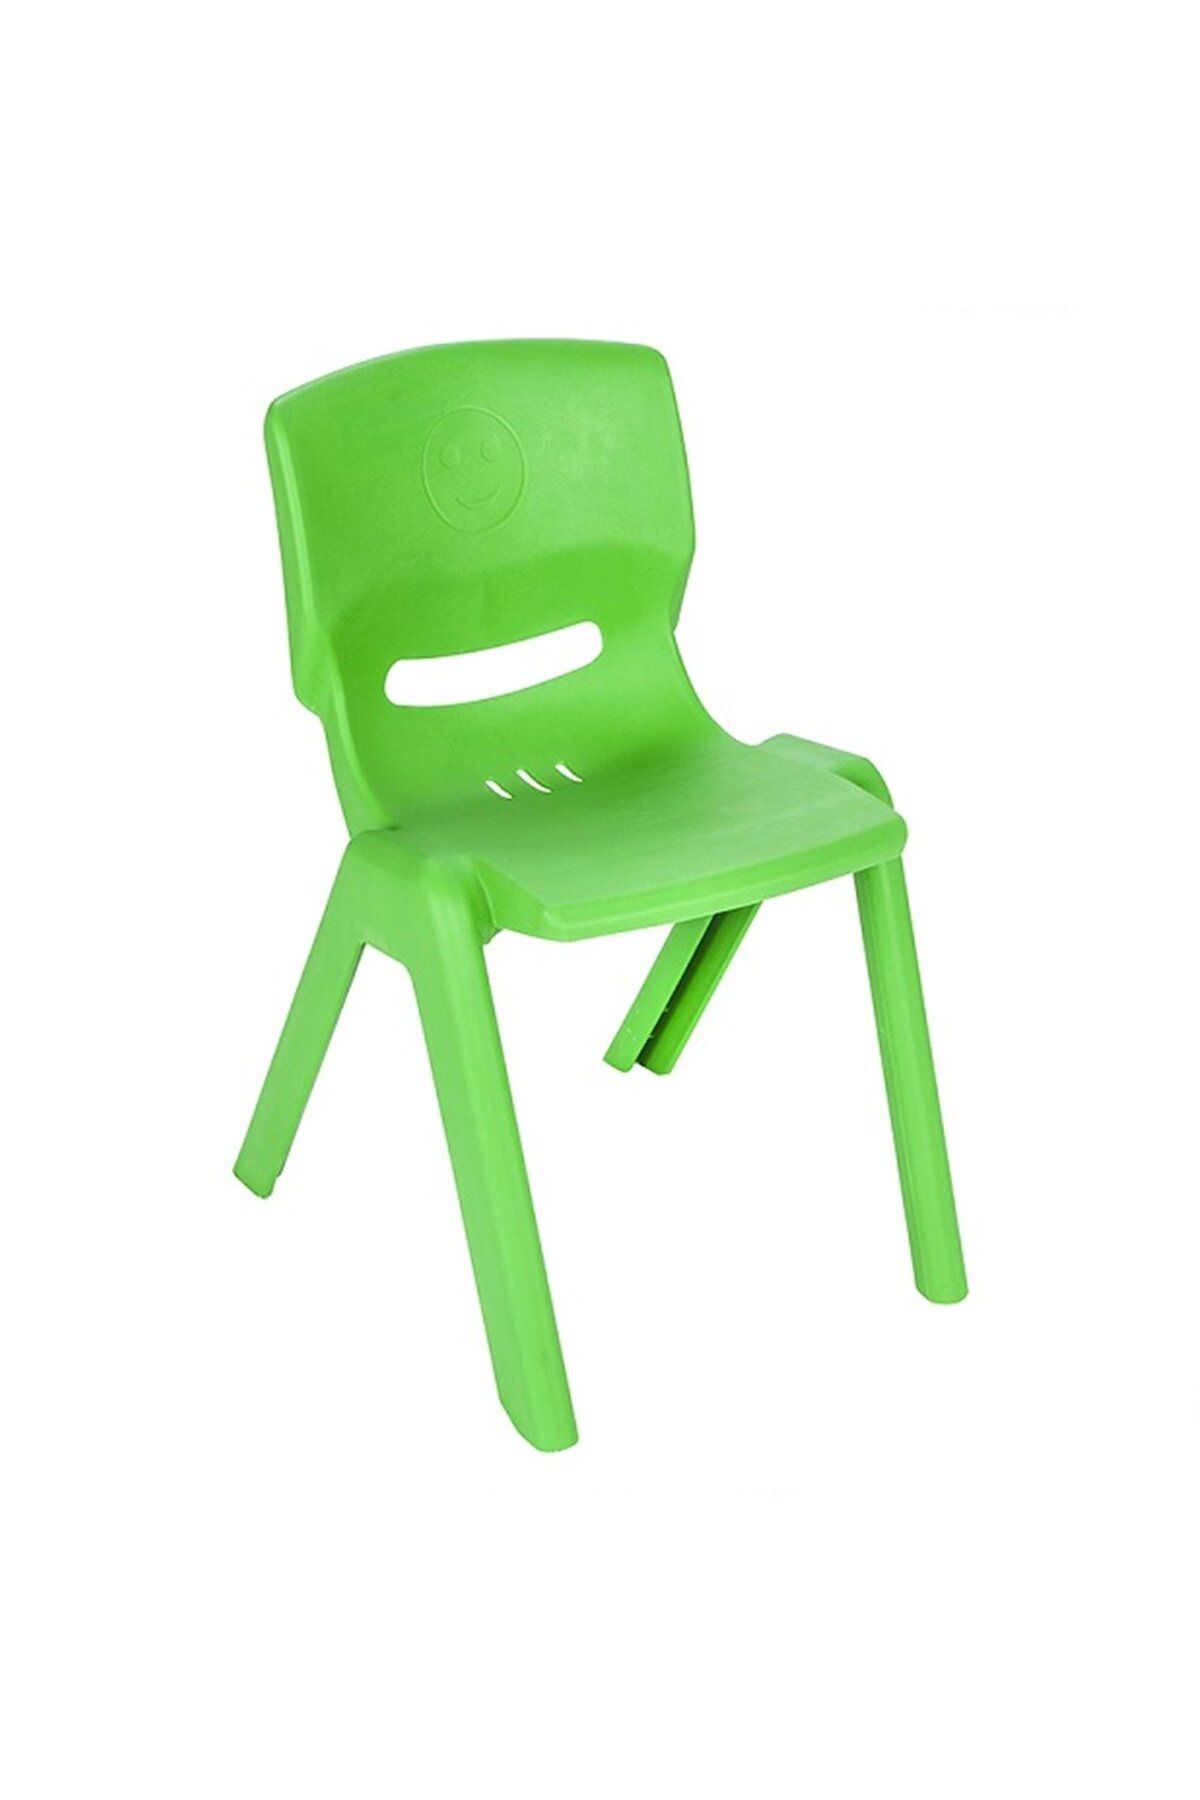 PİLSAN Nessiworld Happy Sandalye Yeşil